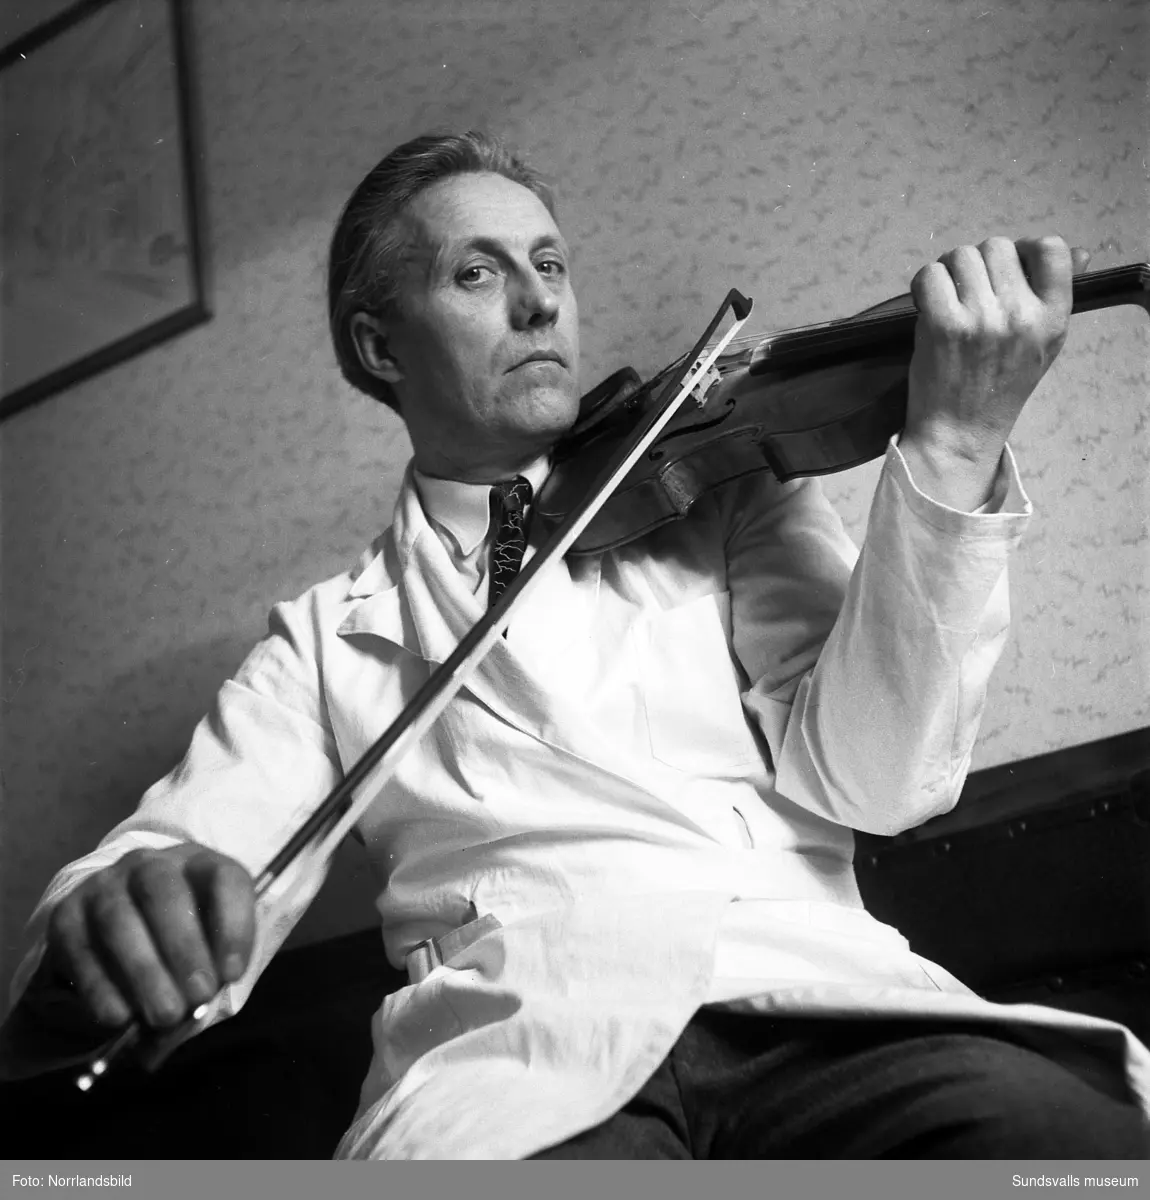 En fiolbyggare med efternamnet Strömstedt, spelar på ett av sina alster.